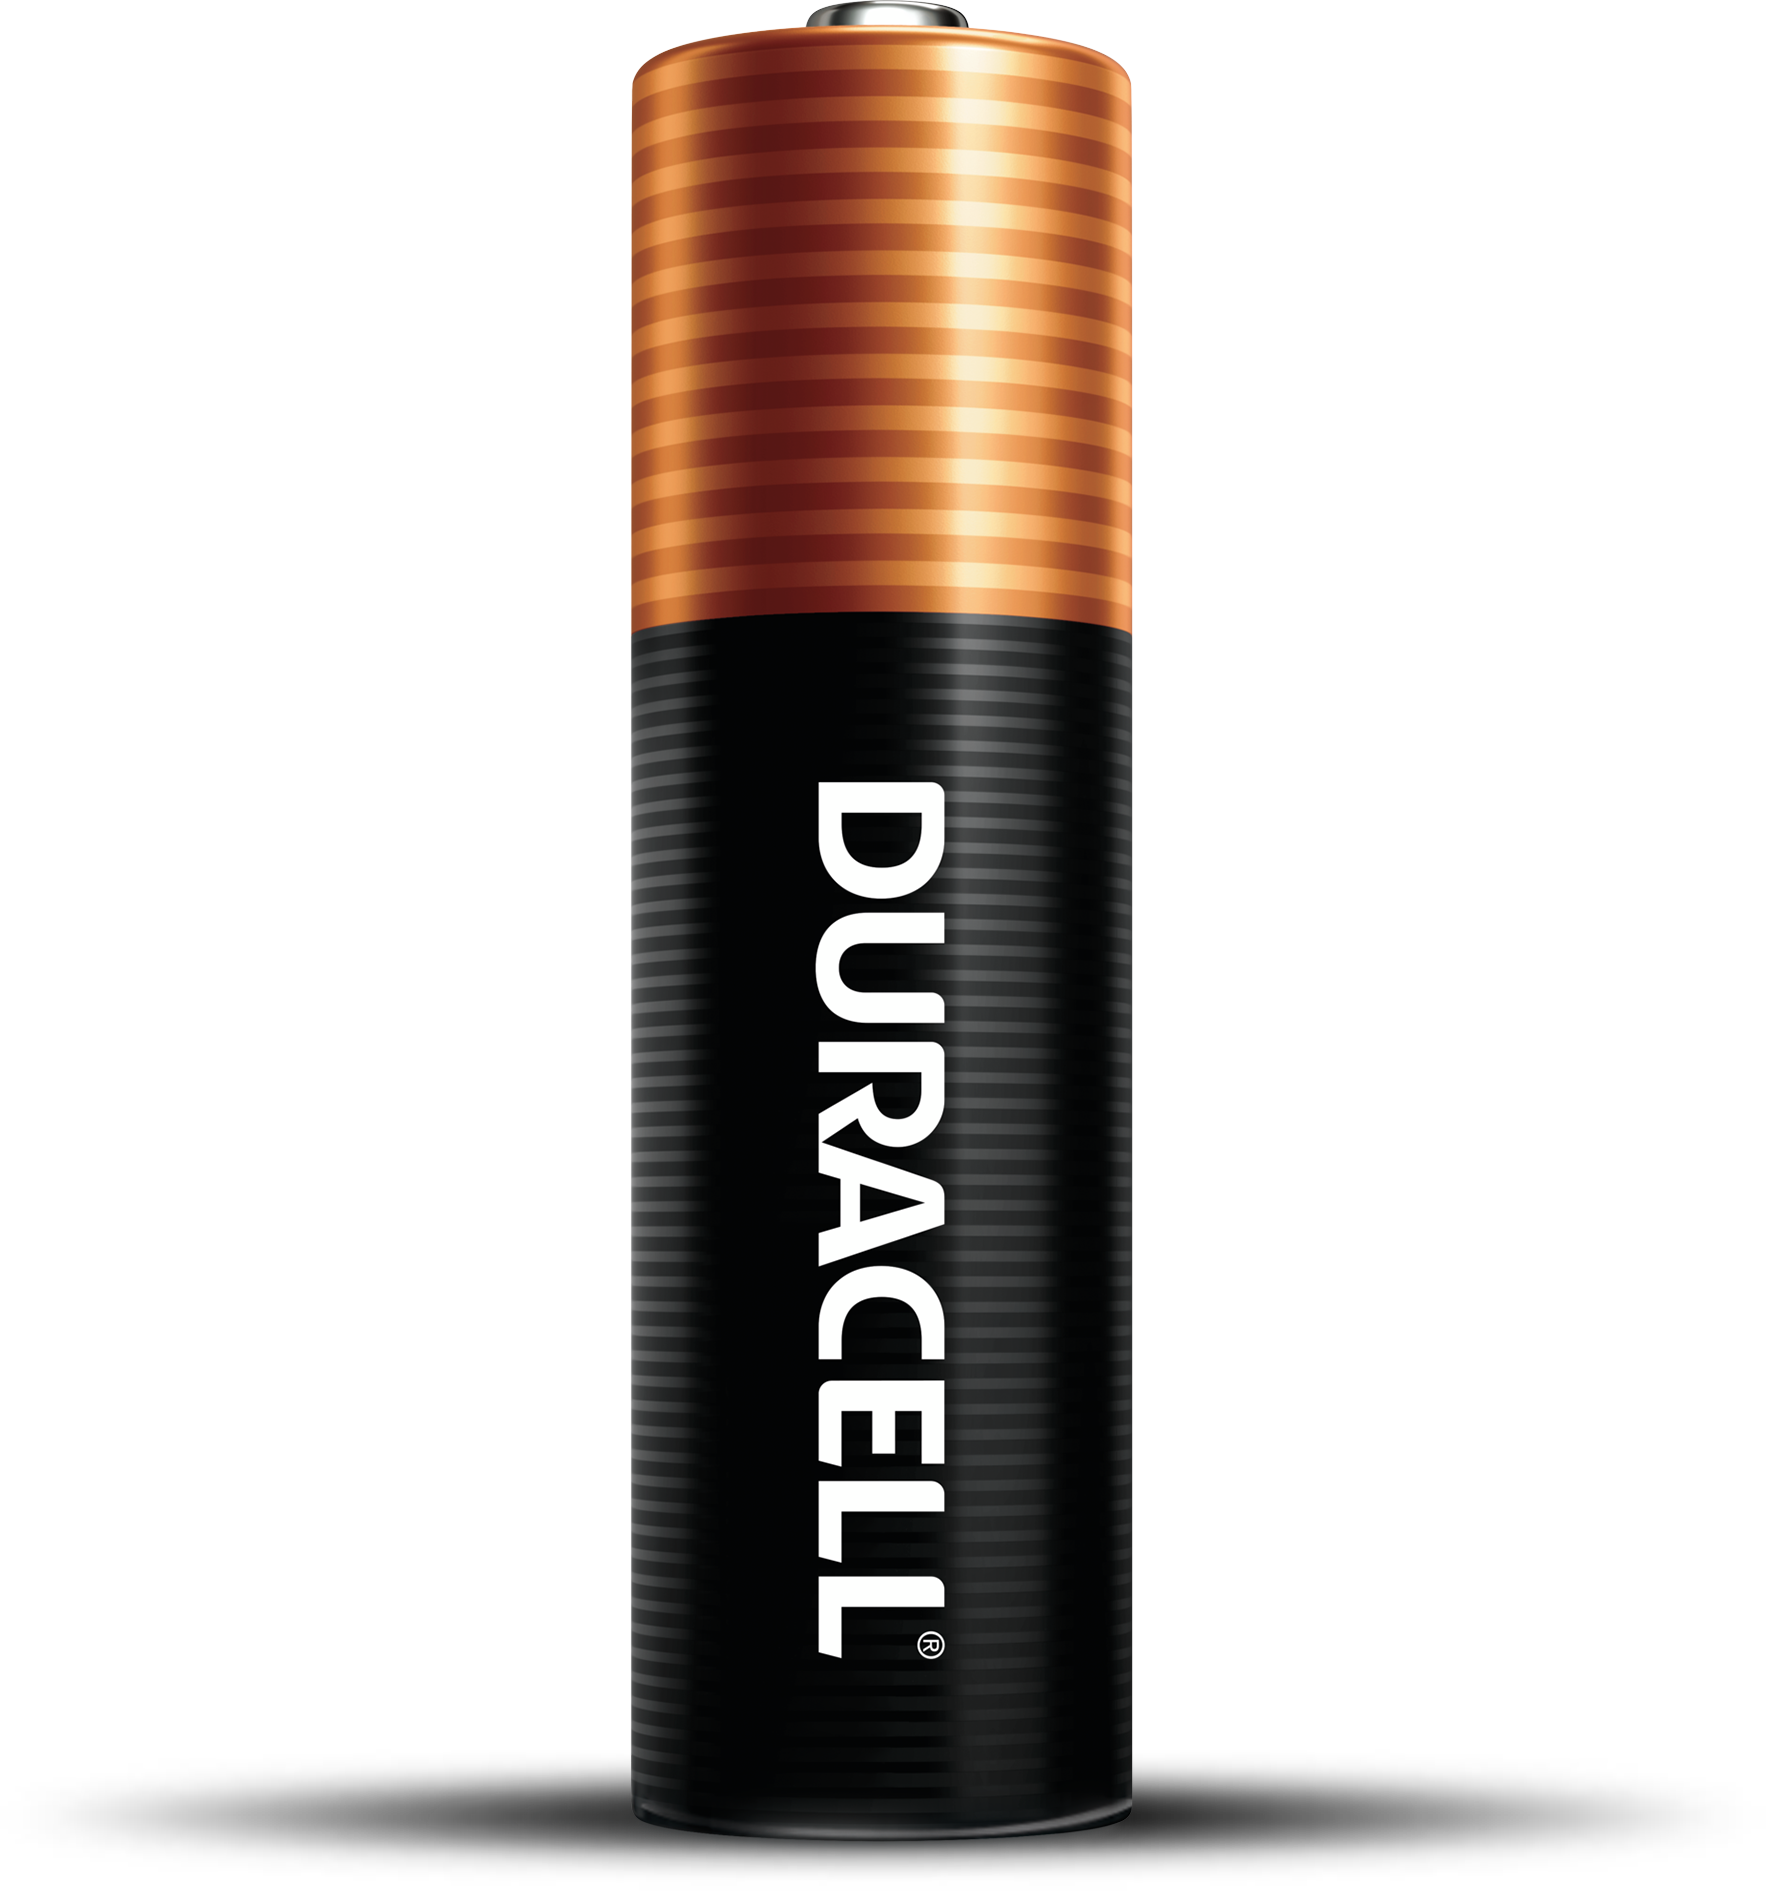 Este paquete de Duracell tiene 24 pilas AAA de larga duración y un precio  de solo 299 pesos en